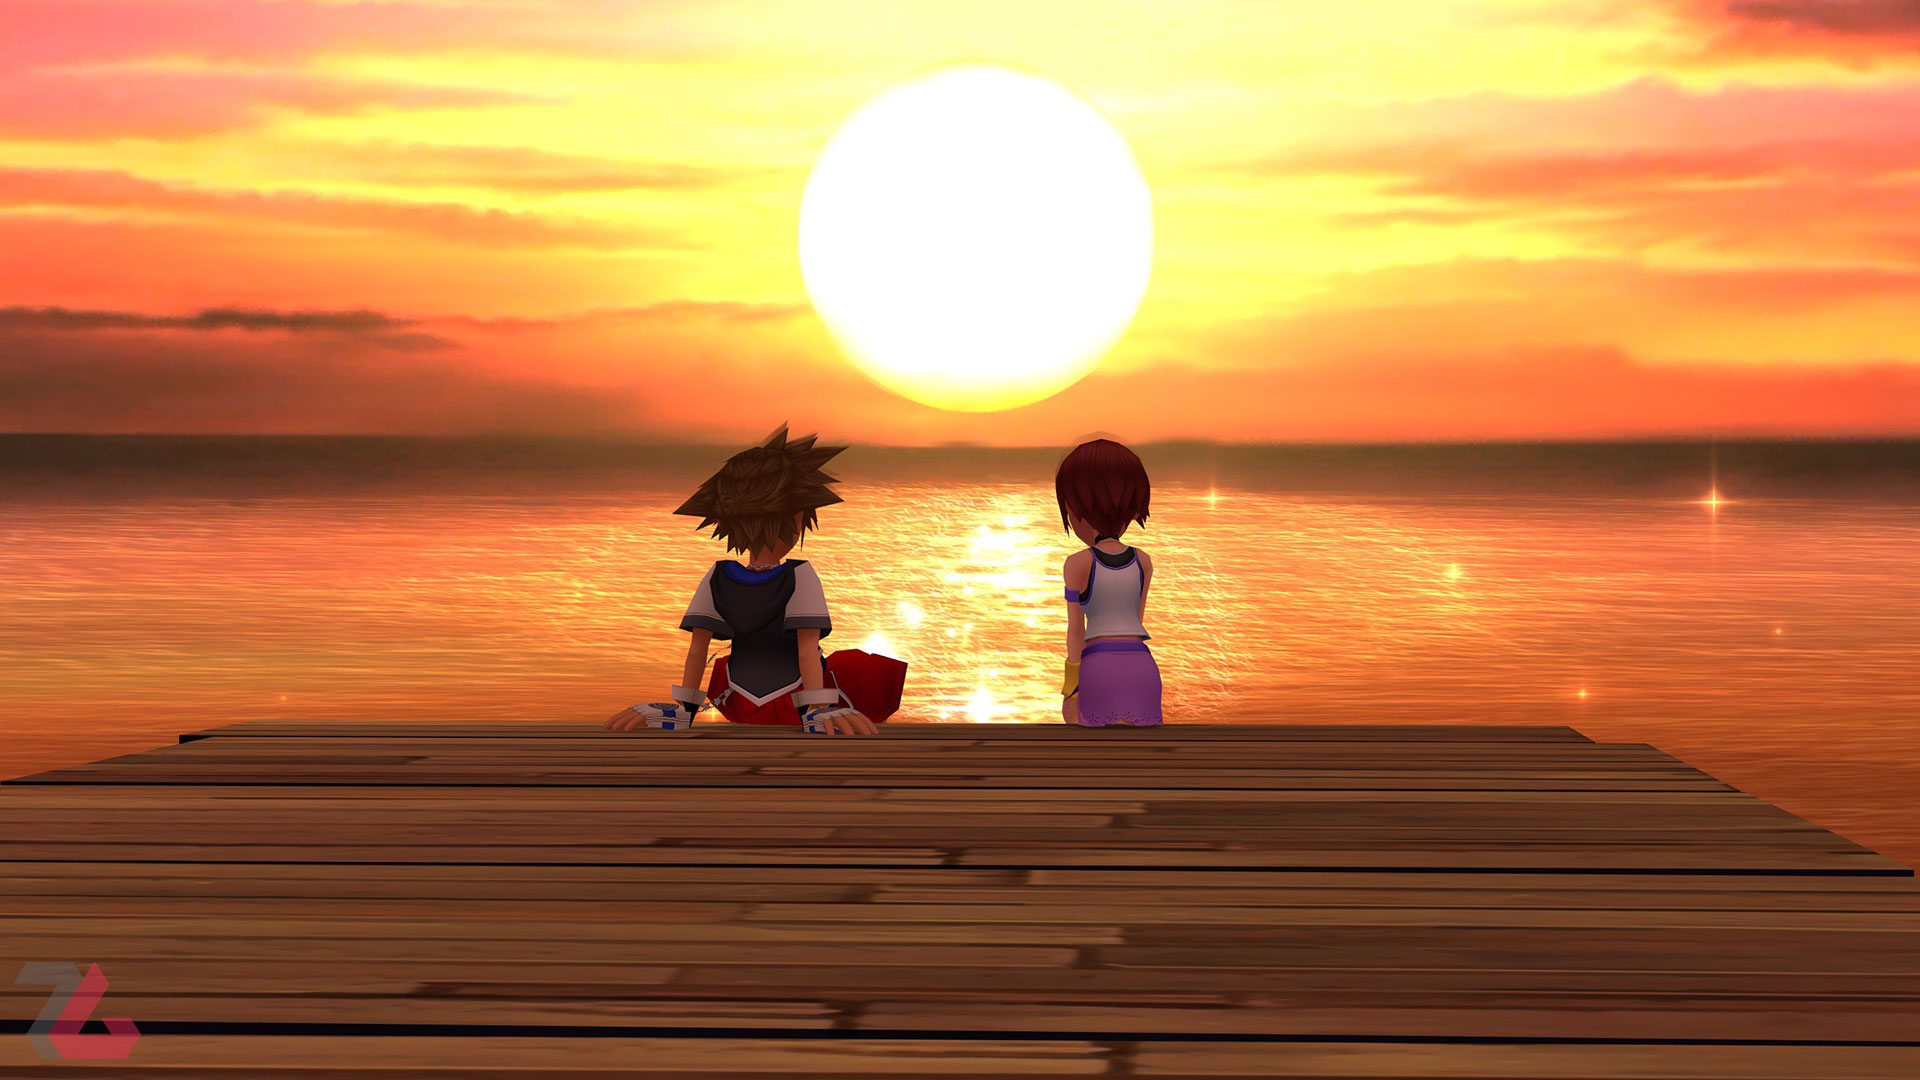 سورا و کایری در بازی راکسس در بازی Kingdom Hearts 1.5 + 2.5 Remix